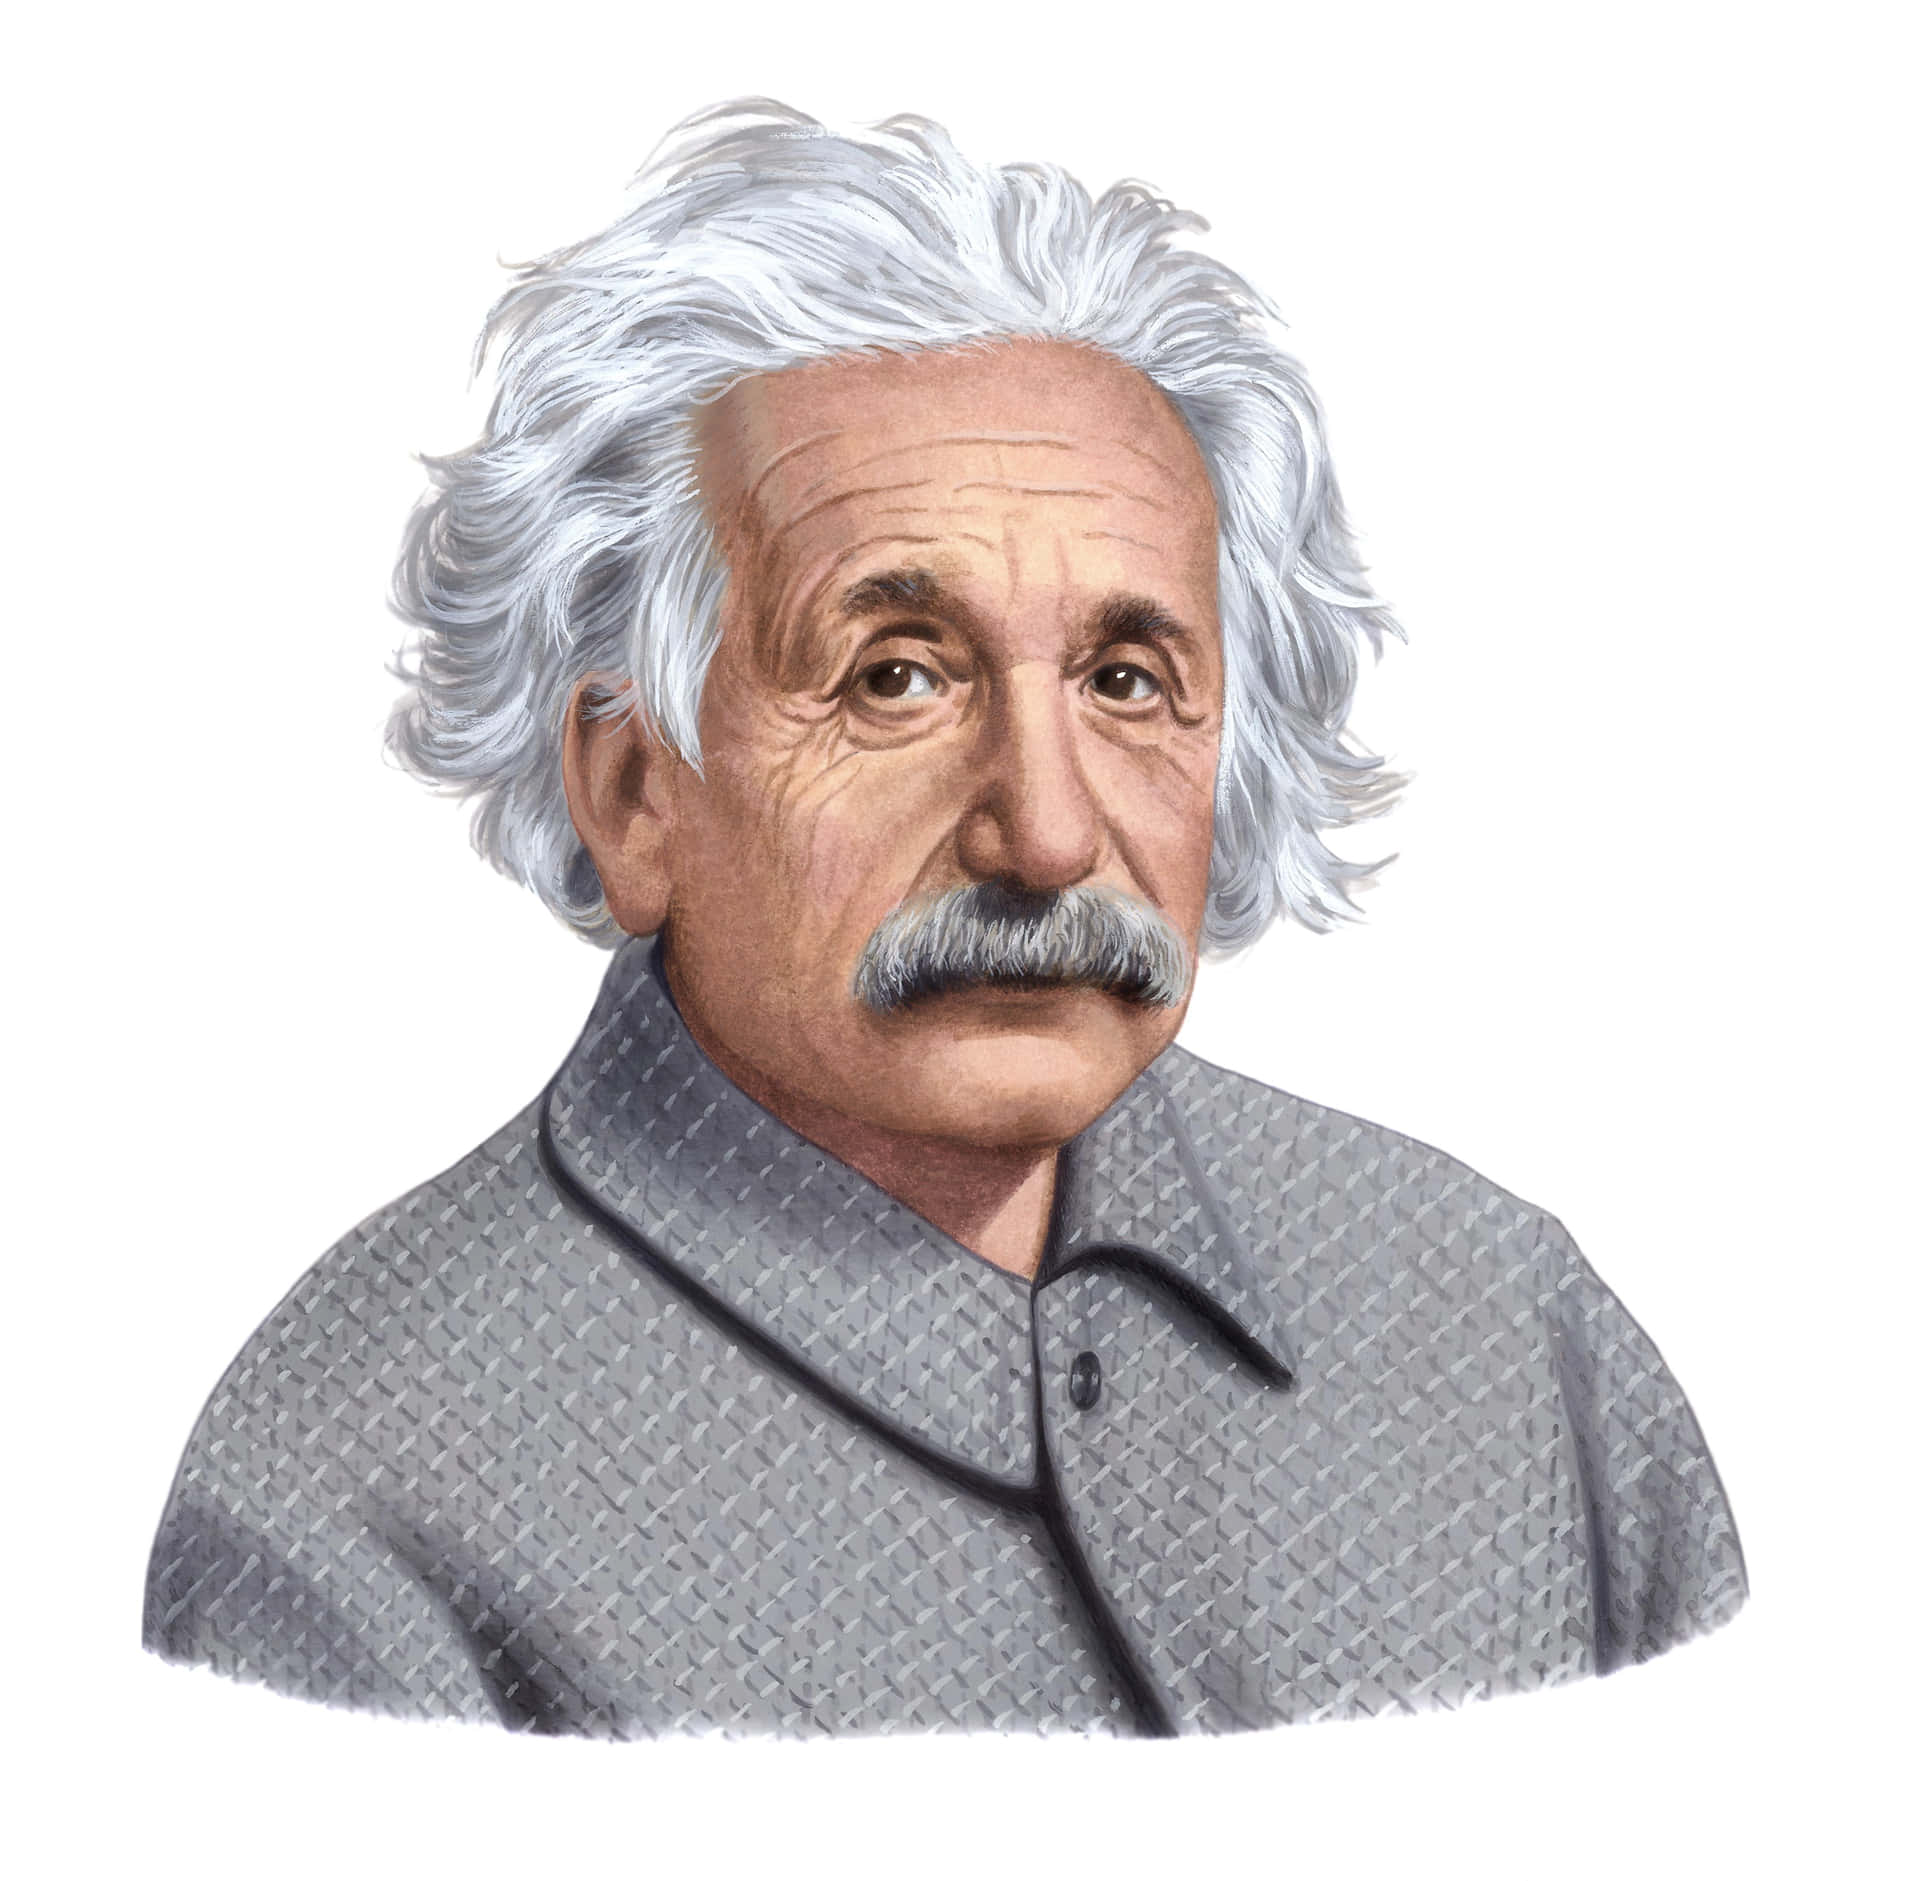 Albert Einstein, revolutionary physicist and Nobel Prize Winner